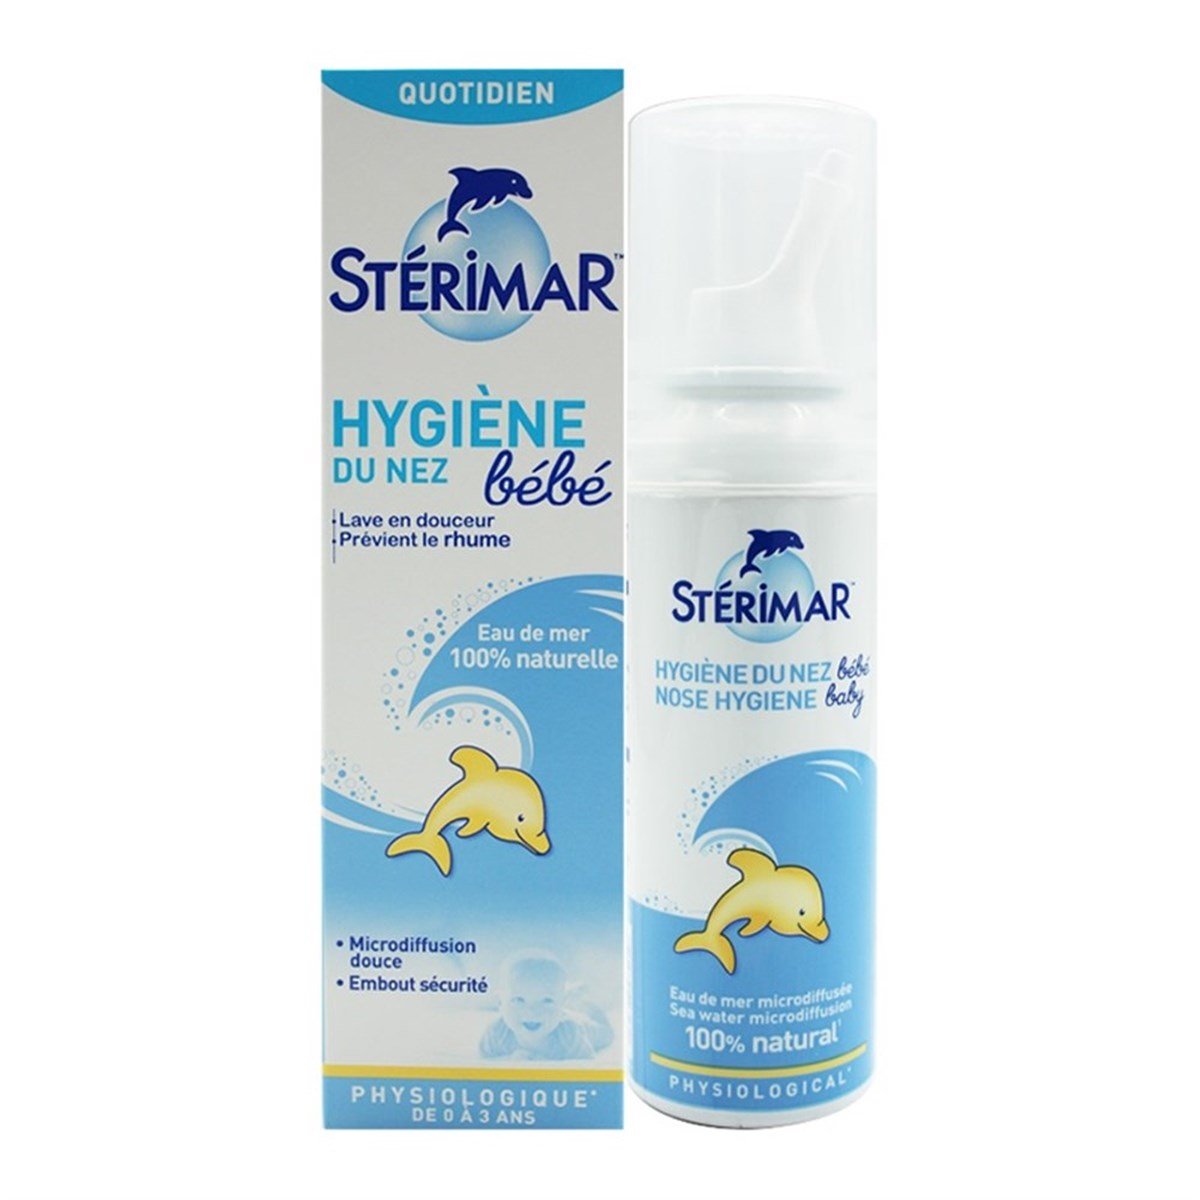 Stérimar baby Nose hygiene 100ml